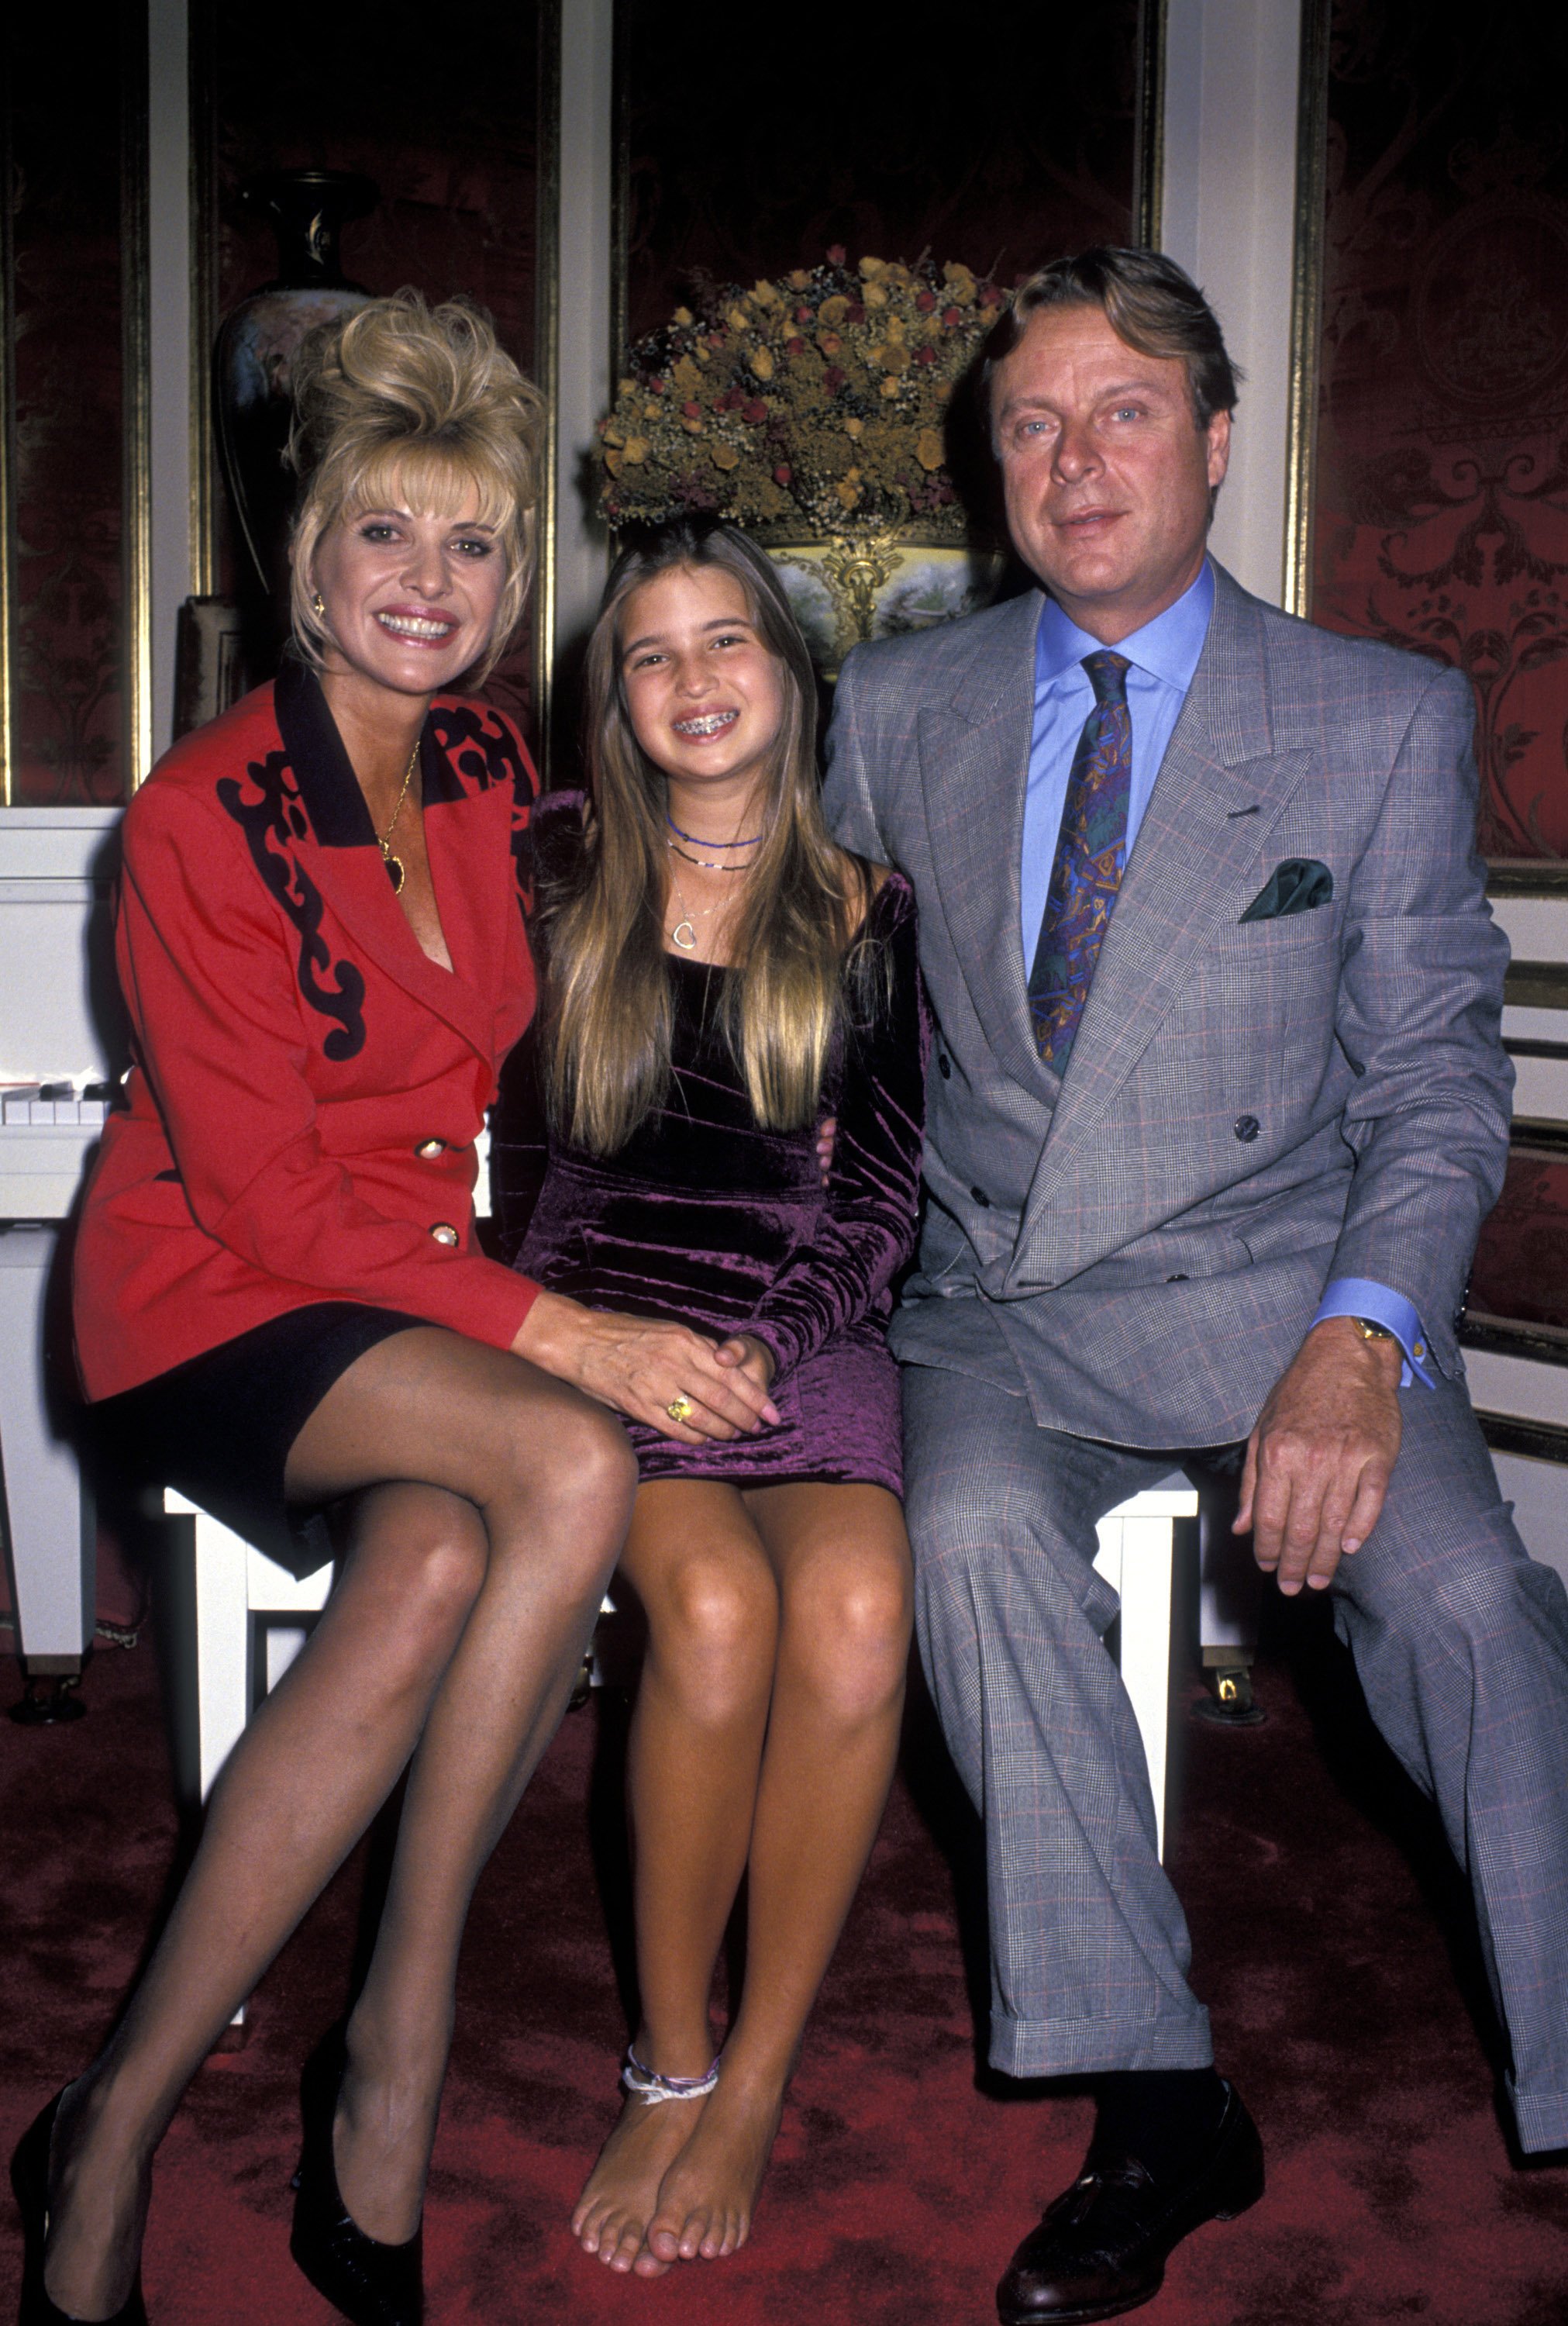 Ivana Trump con su hija Ivanka y Riccardo Mazzucchelli durante una sesión de fotos exclusiva en su casa, el 27 de septiembre de 1994 en Nueva York. ┃ Foto: Getty Images